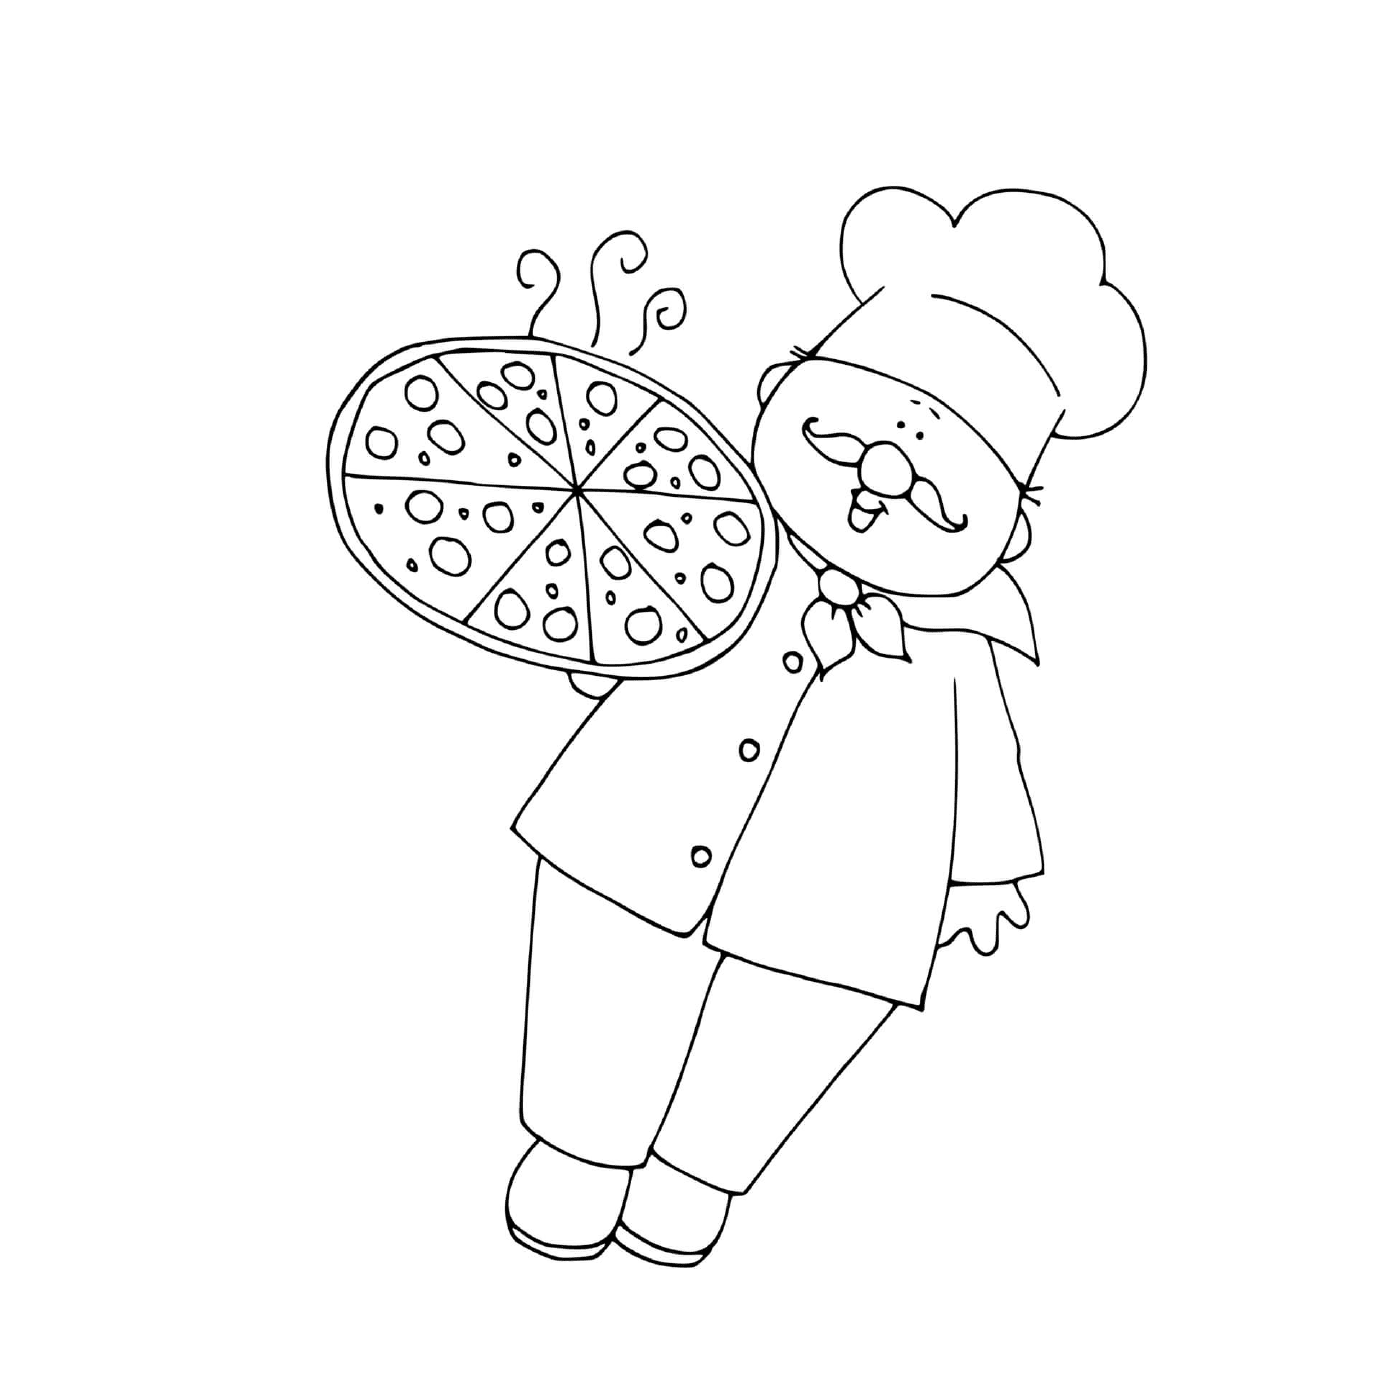  Um chef de pizza 